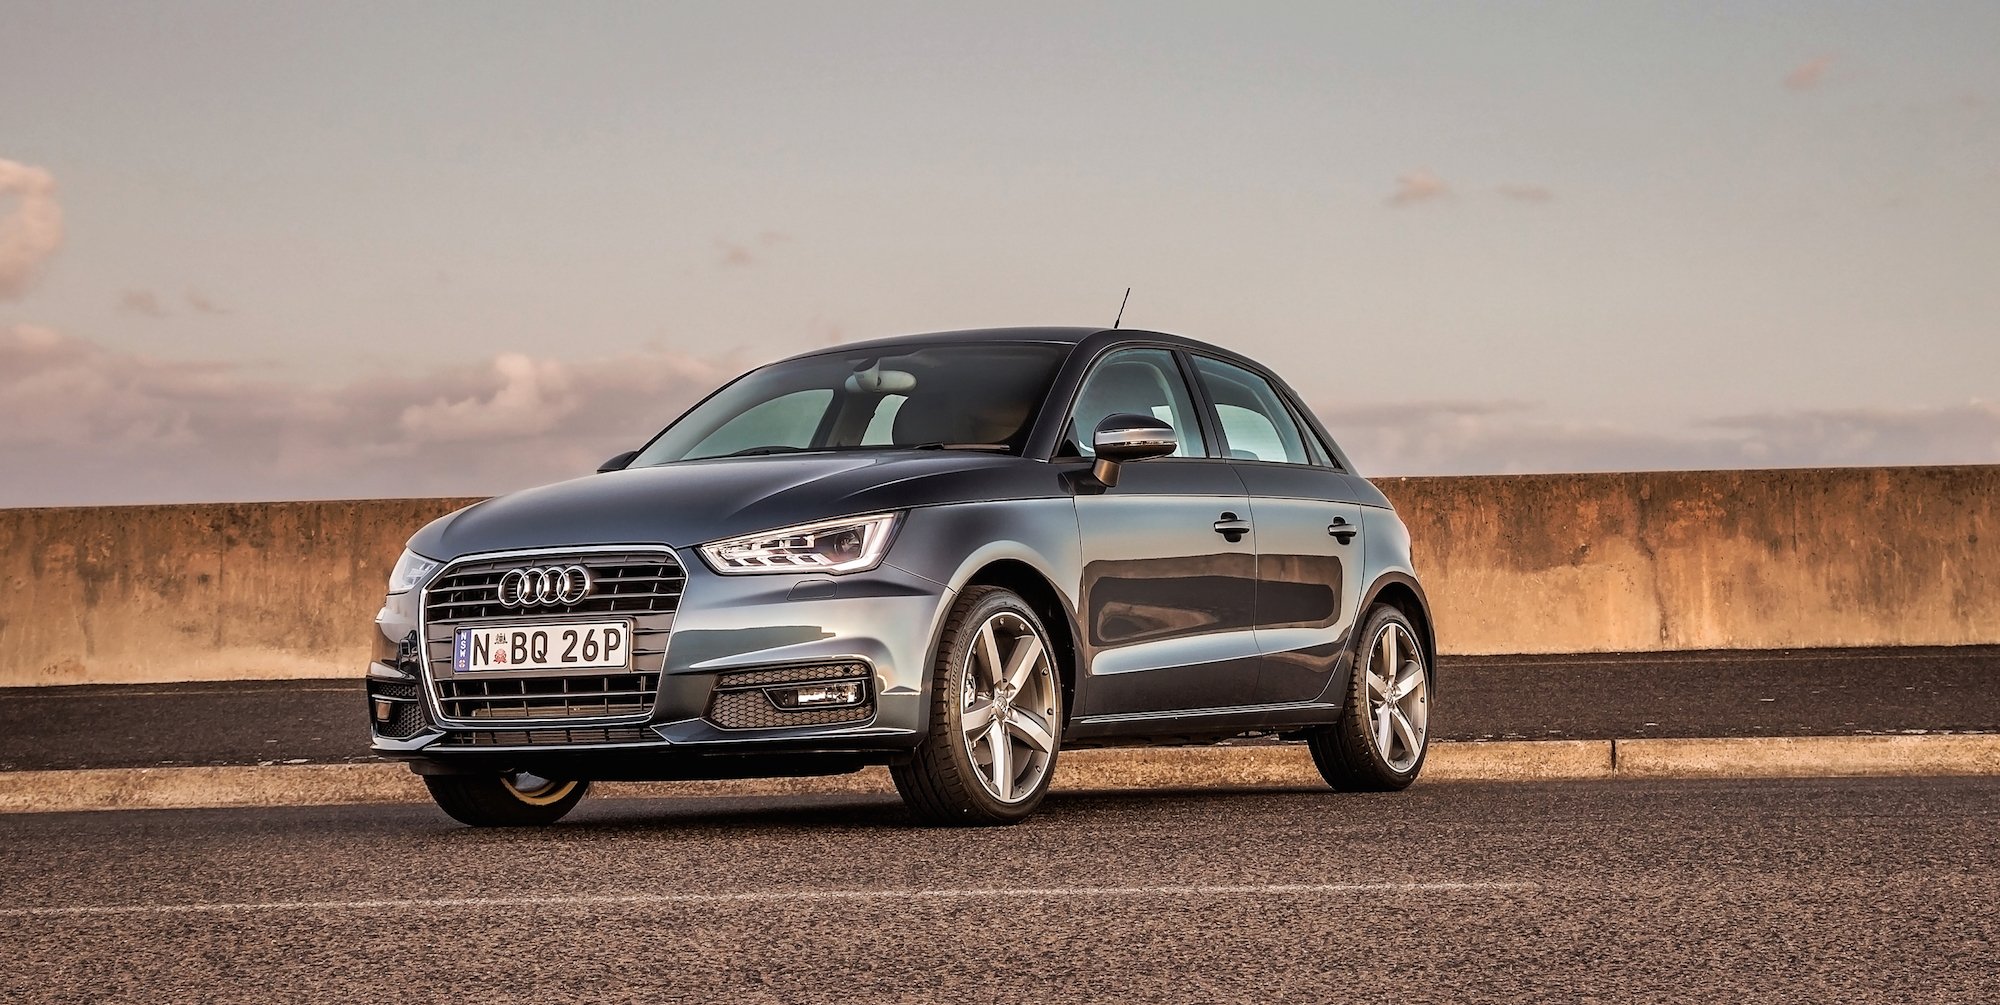 2015 Audi A1 Review | CarAdvice